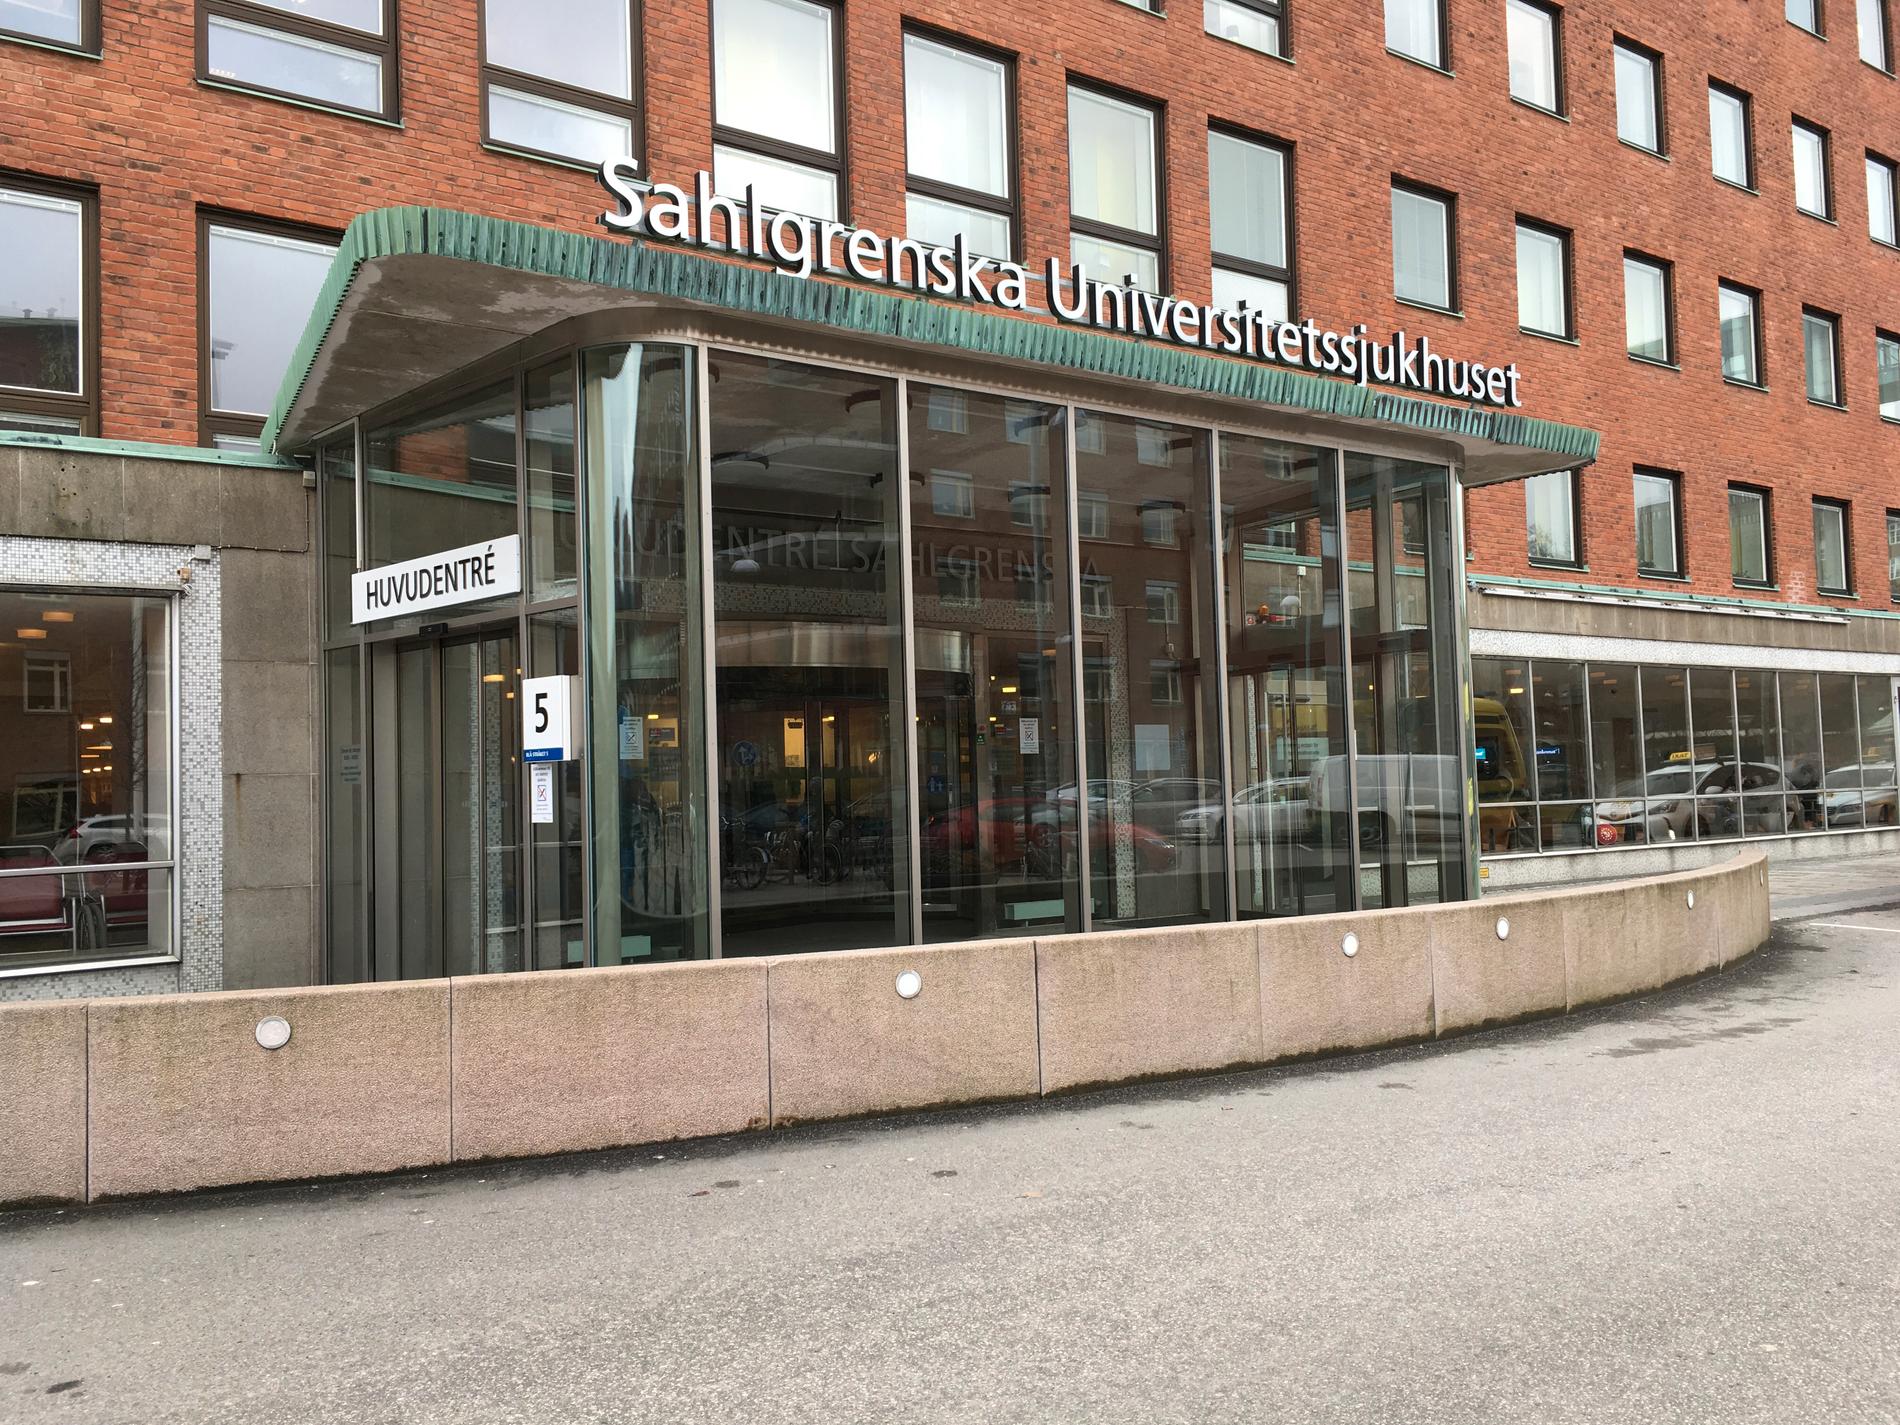 Sahlgrenska universitetssjukhuset lex Maria-anmäler en händelse där personal använt begreppet "kulturell svimning" om en patient. Arkivbild.